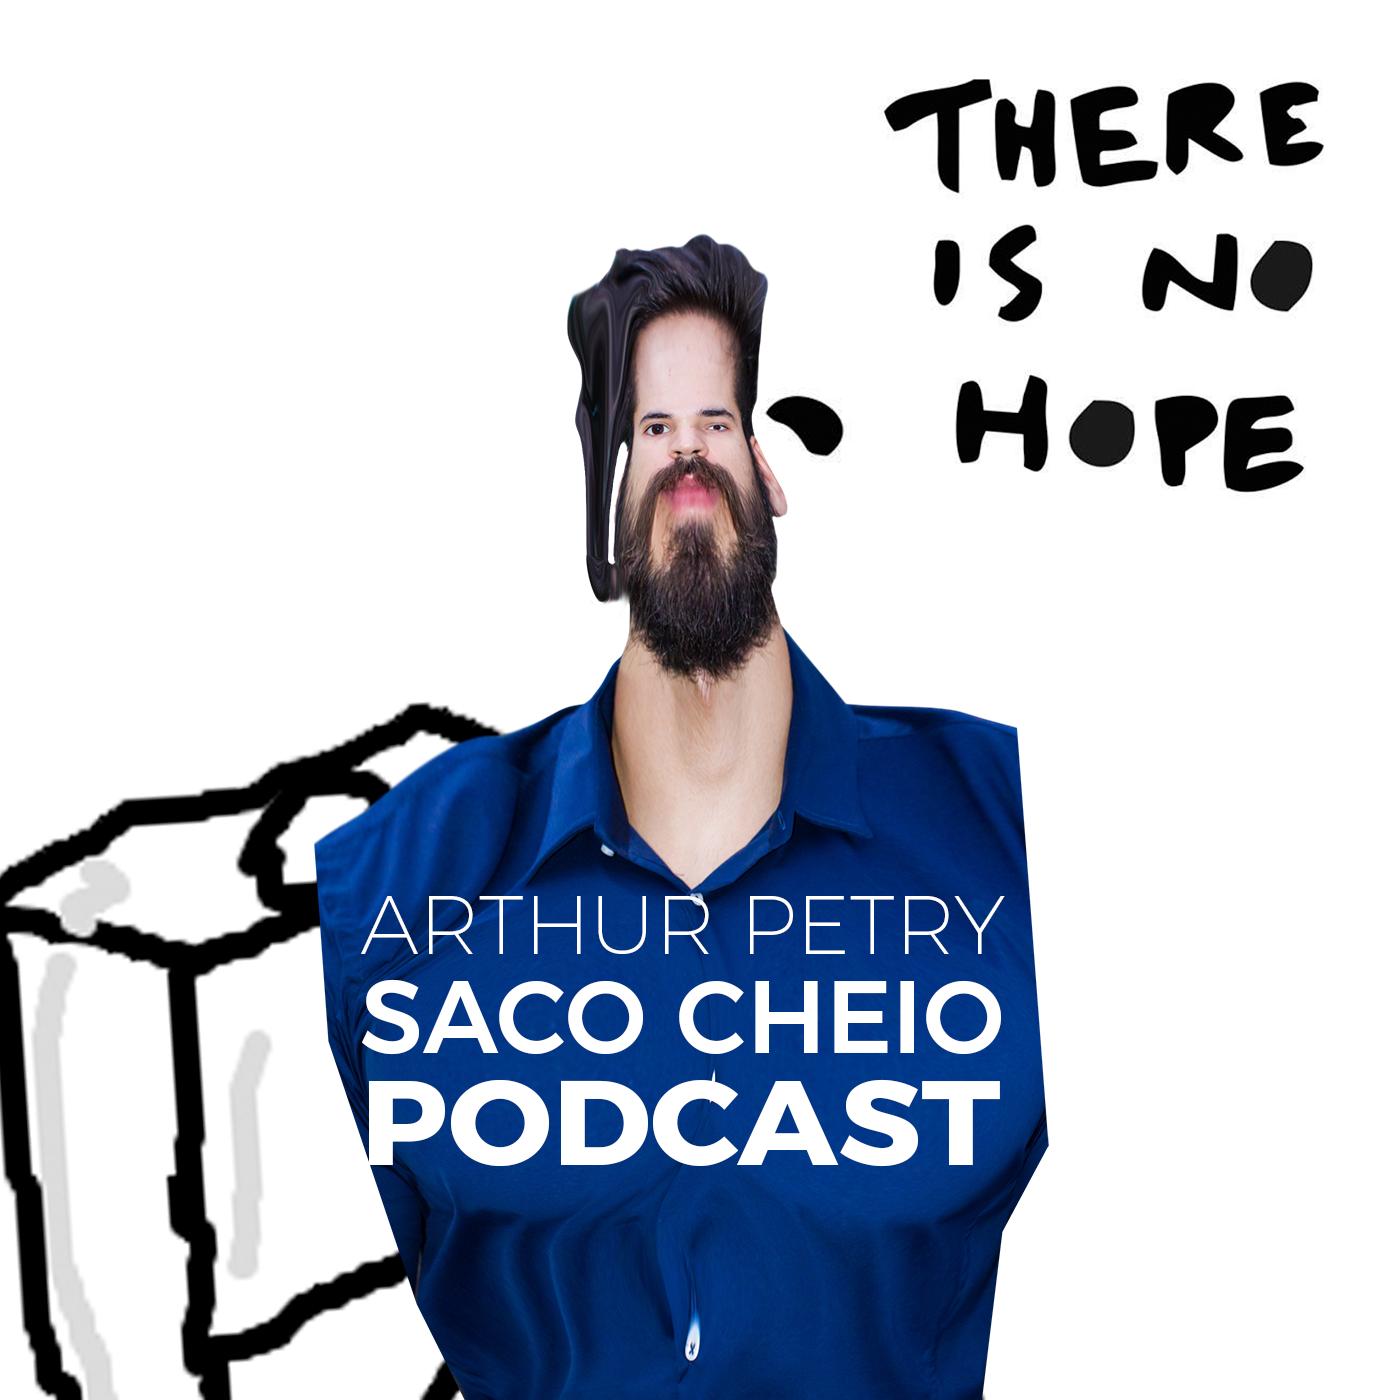 Stream Saco Cheio Podcast - Vikings by Saco Cheio Podcast com Arthur Petry